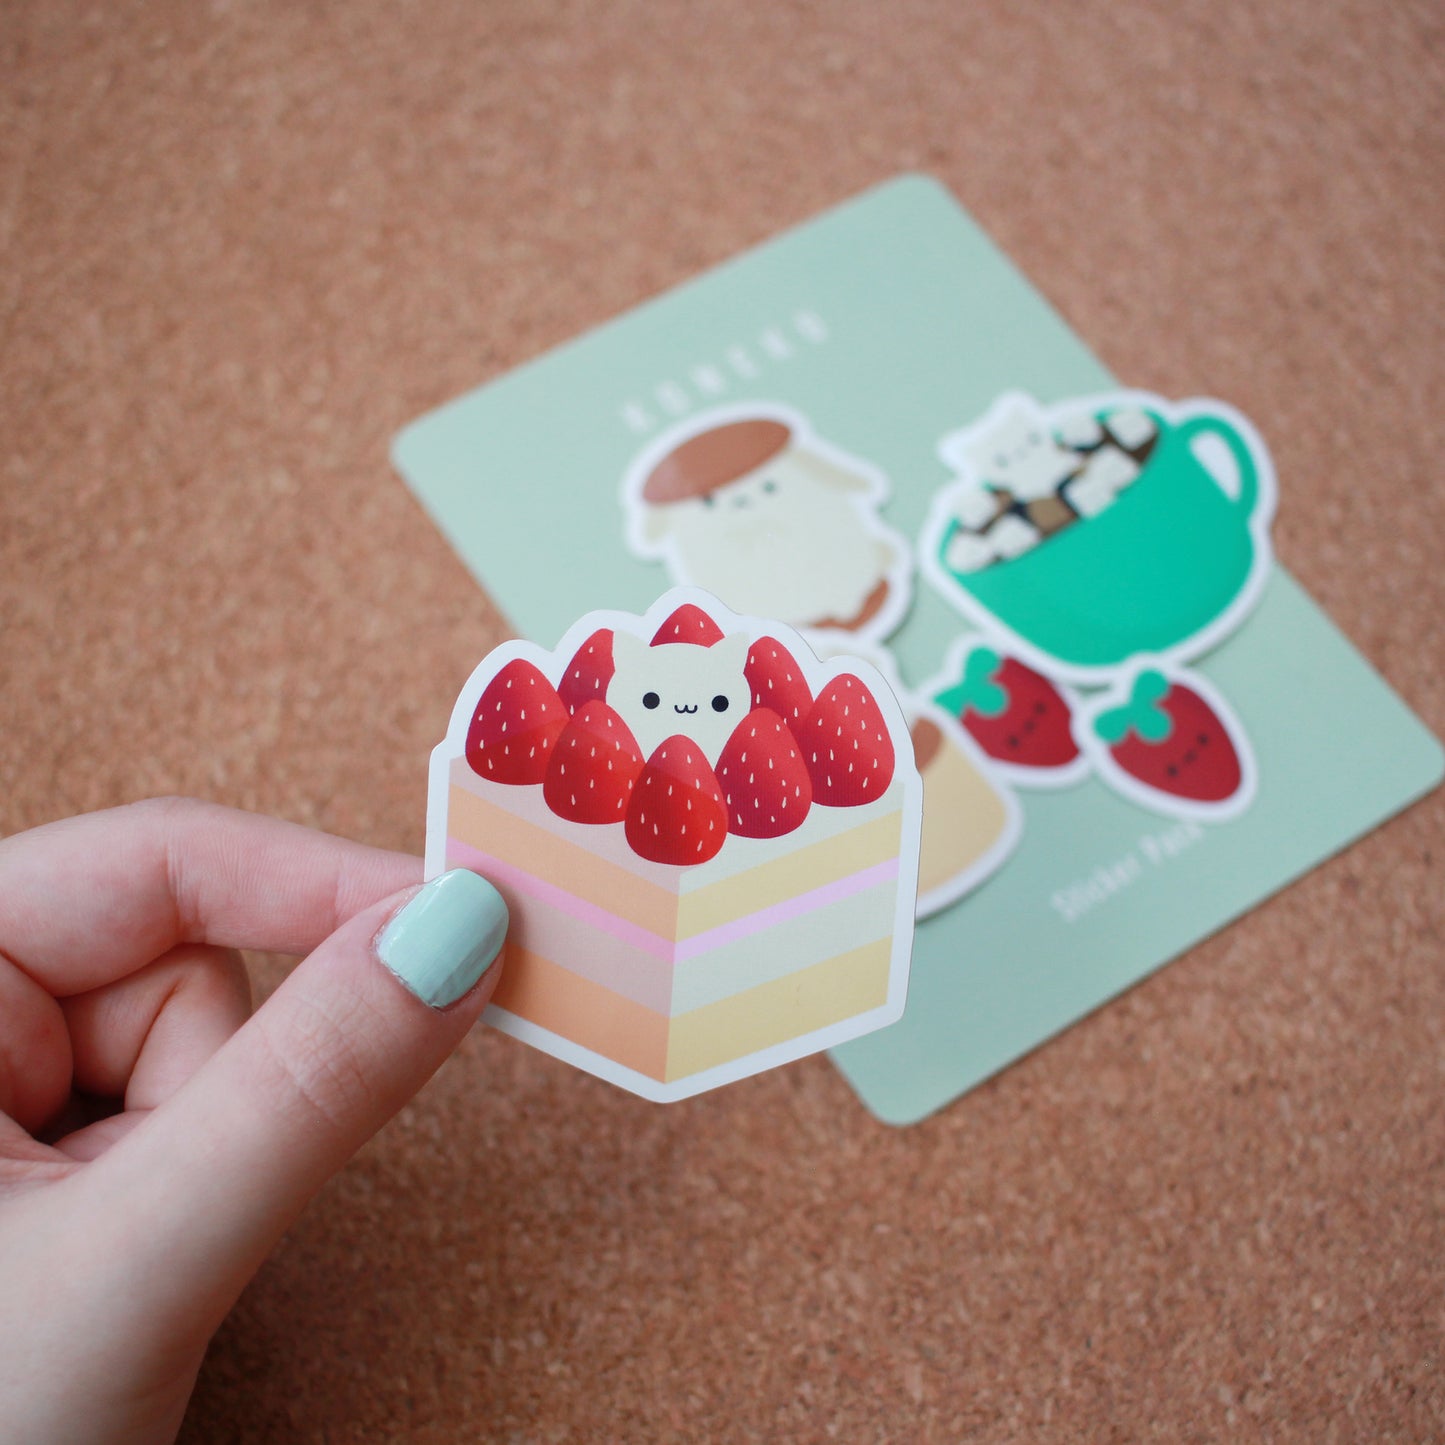 Kawaii Desserts - Sticker Pack